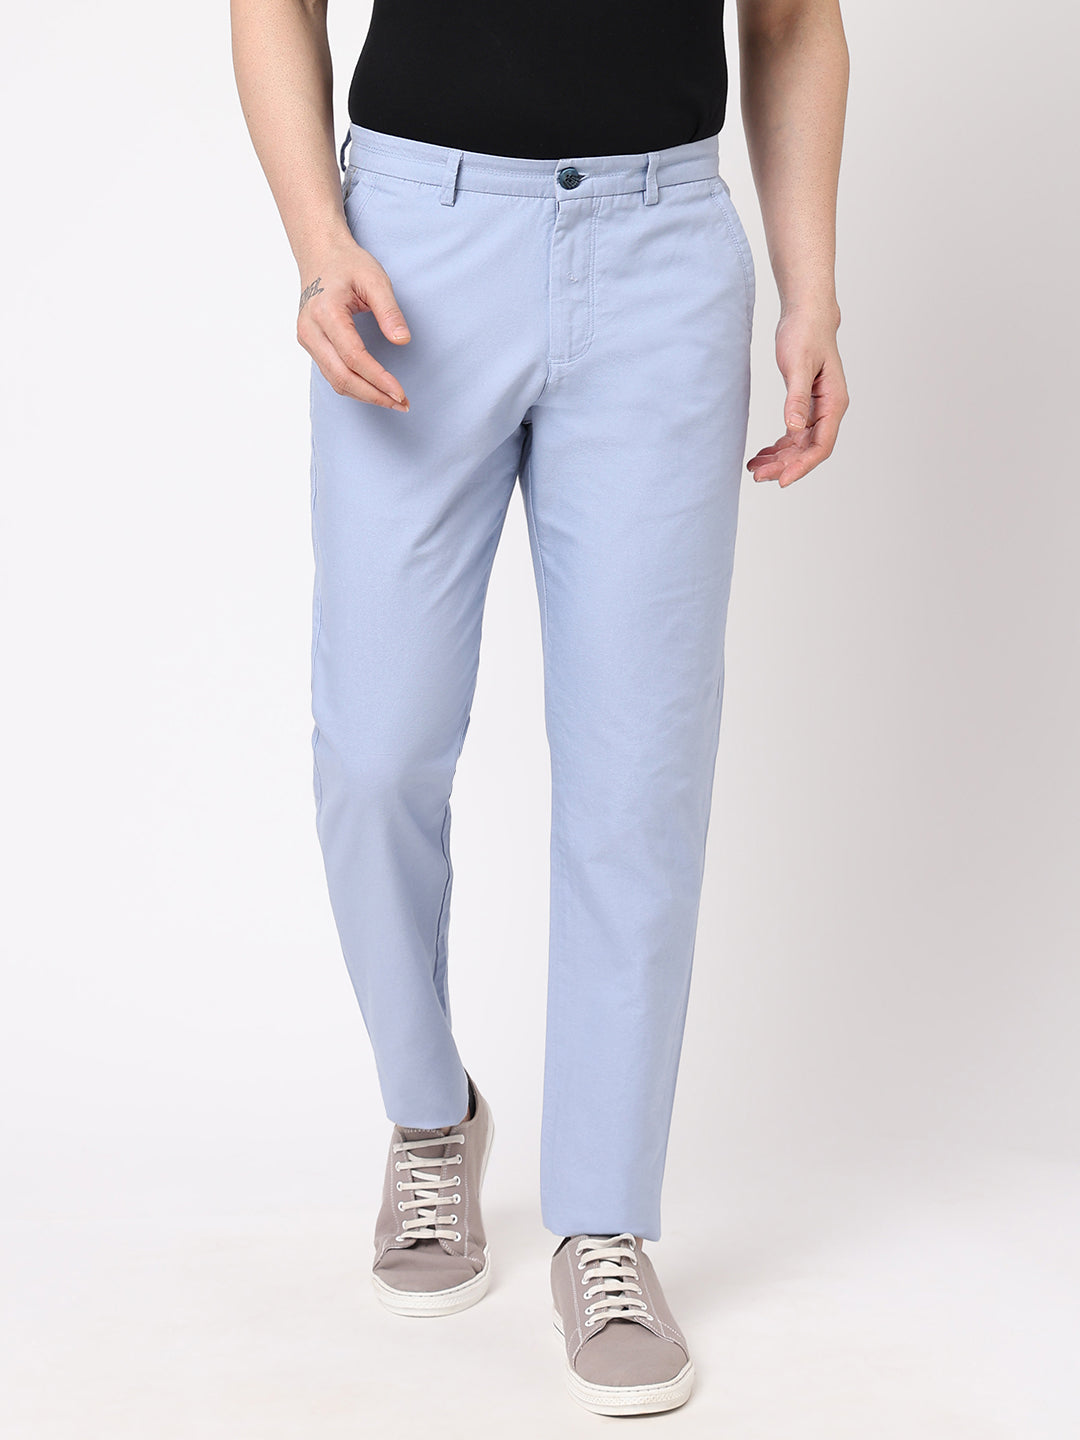 Men's Slim Fit 100% Cotton Blue Pant